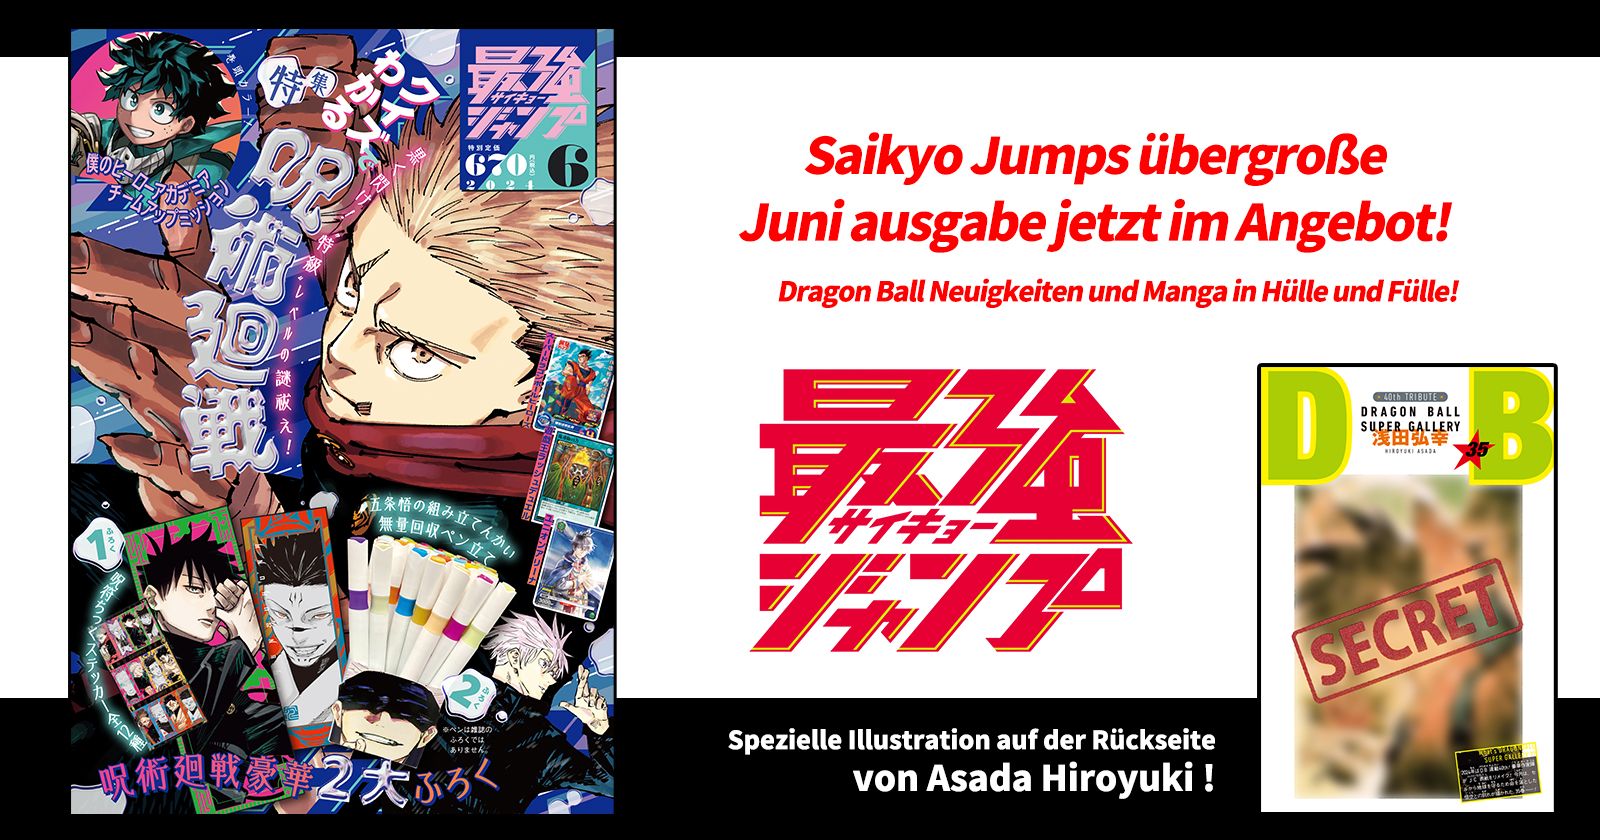 Dragon Ball Manga und jede Menge Goodies! Die übergroße Mai-Edition von Saikyo Jump ist jetzt im Angebot!